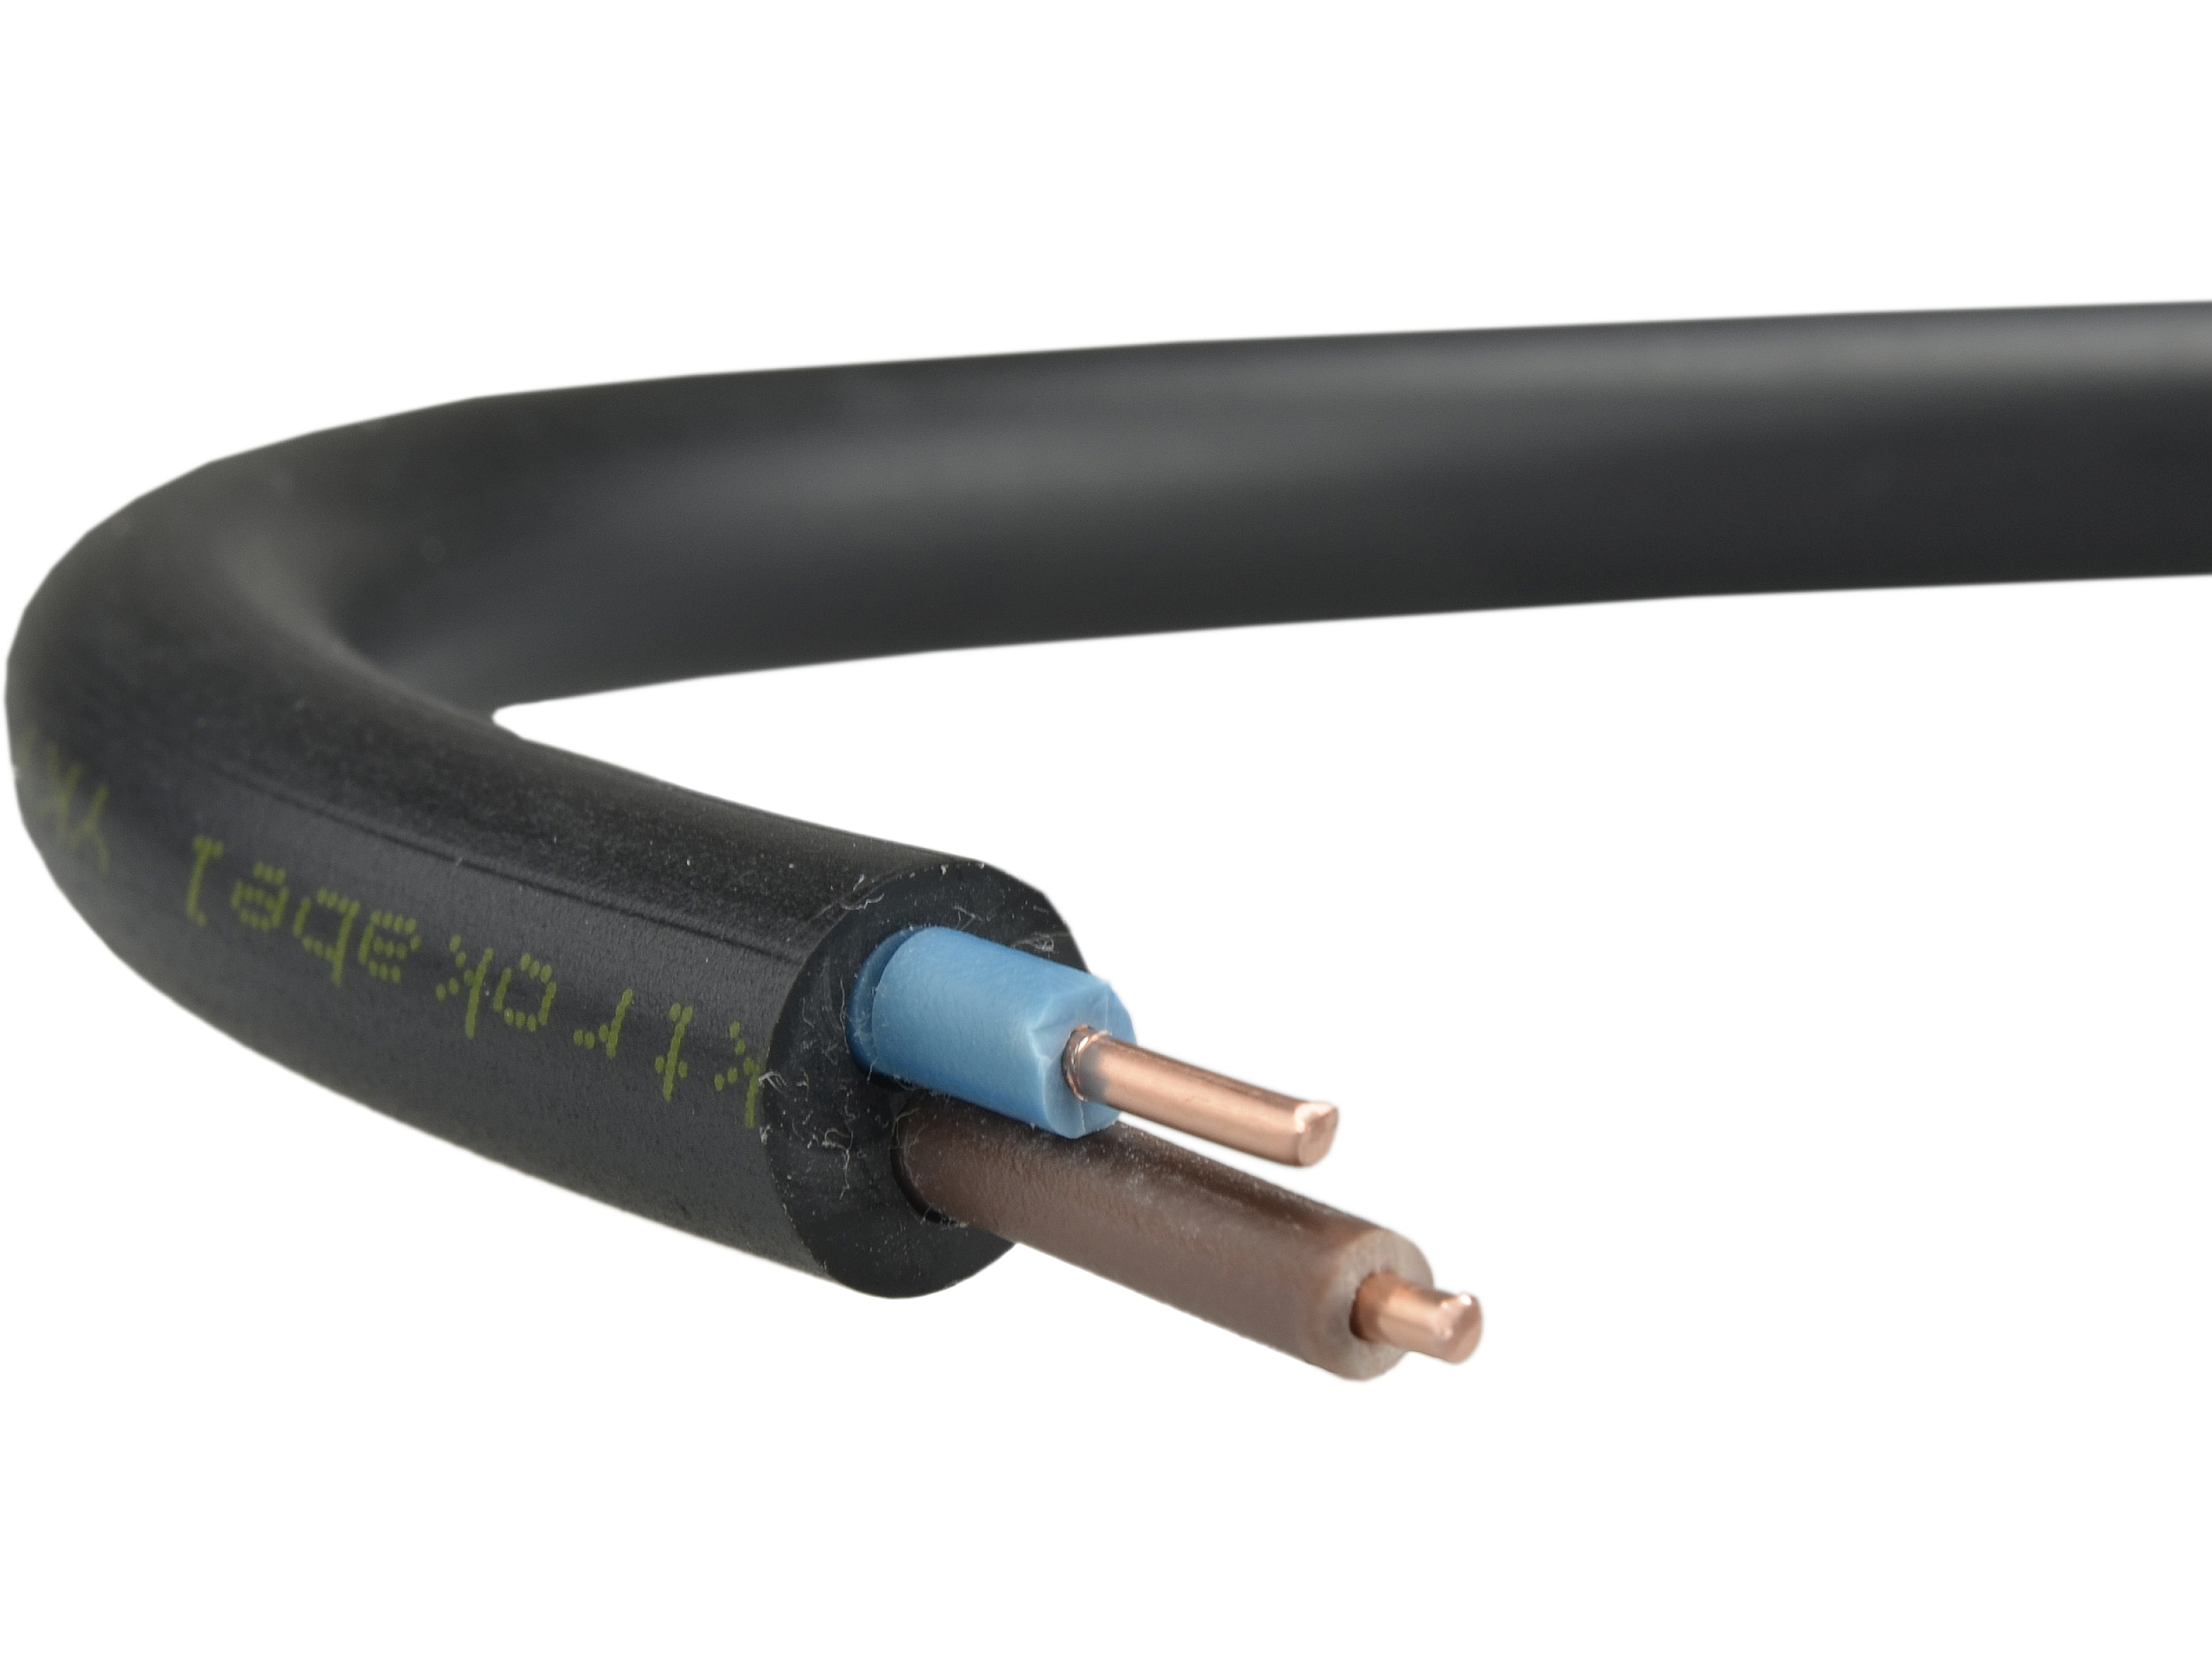 Kabel przewód zewnętrzny UV 2x2,5 mm2 (NYY-J ziemi miedziany) • Cena, Opinie 9210377736 • Allegro.pl